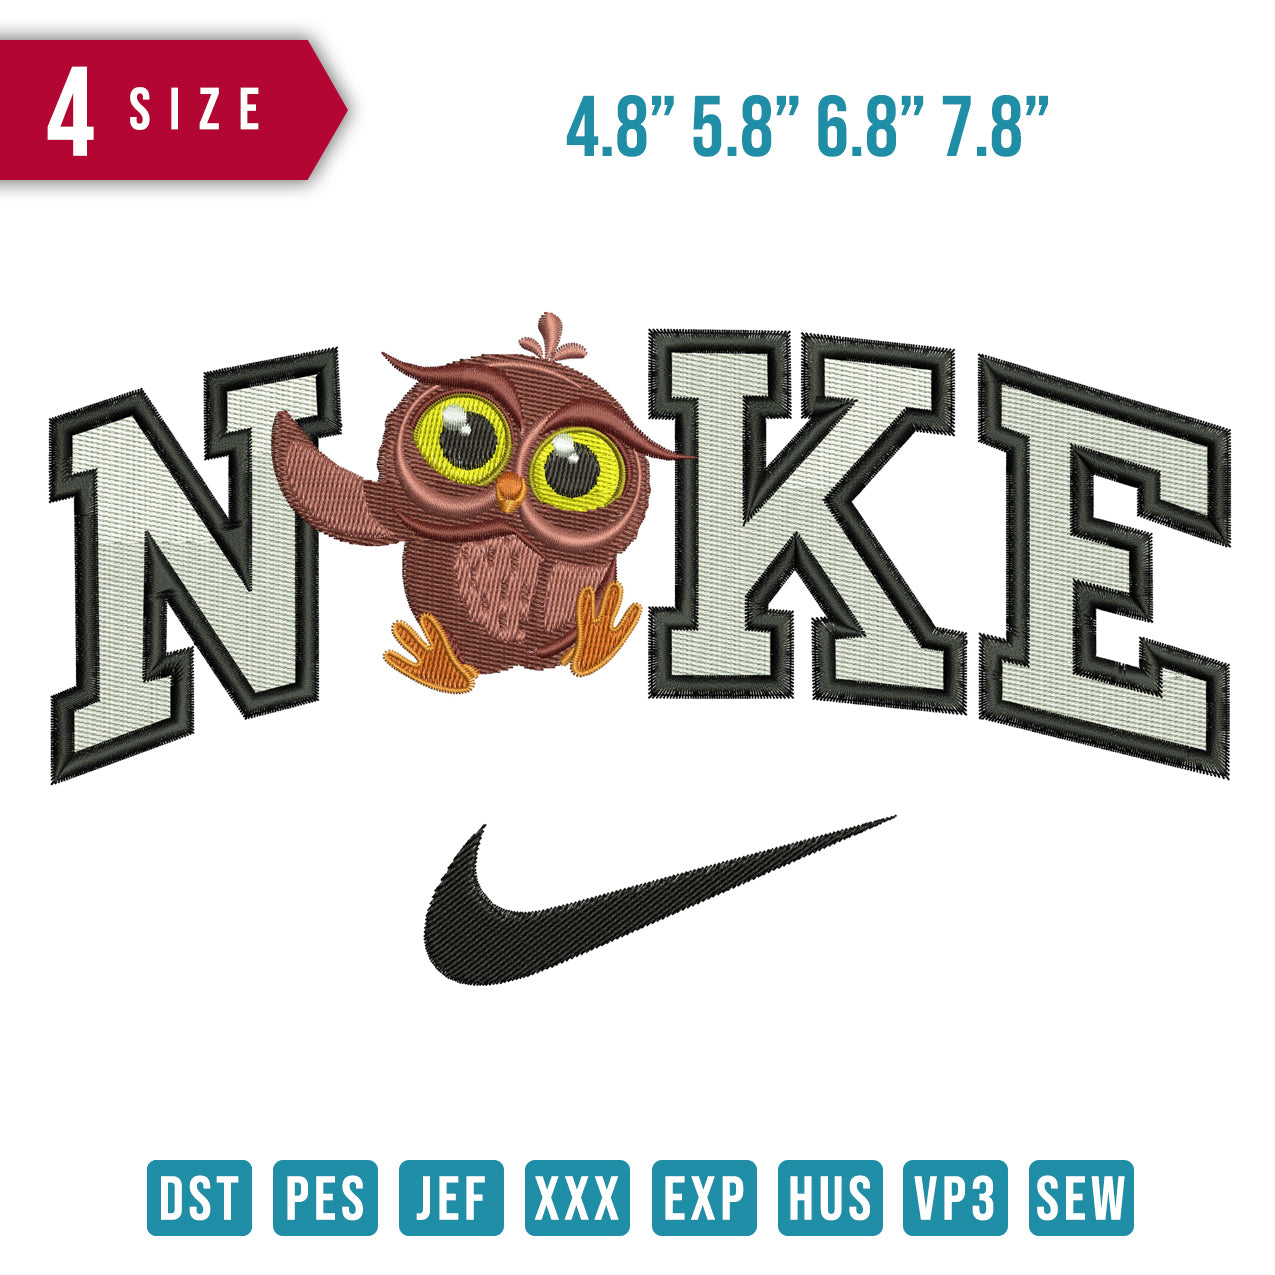 Nike Baby Owl